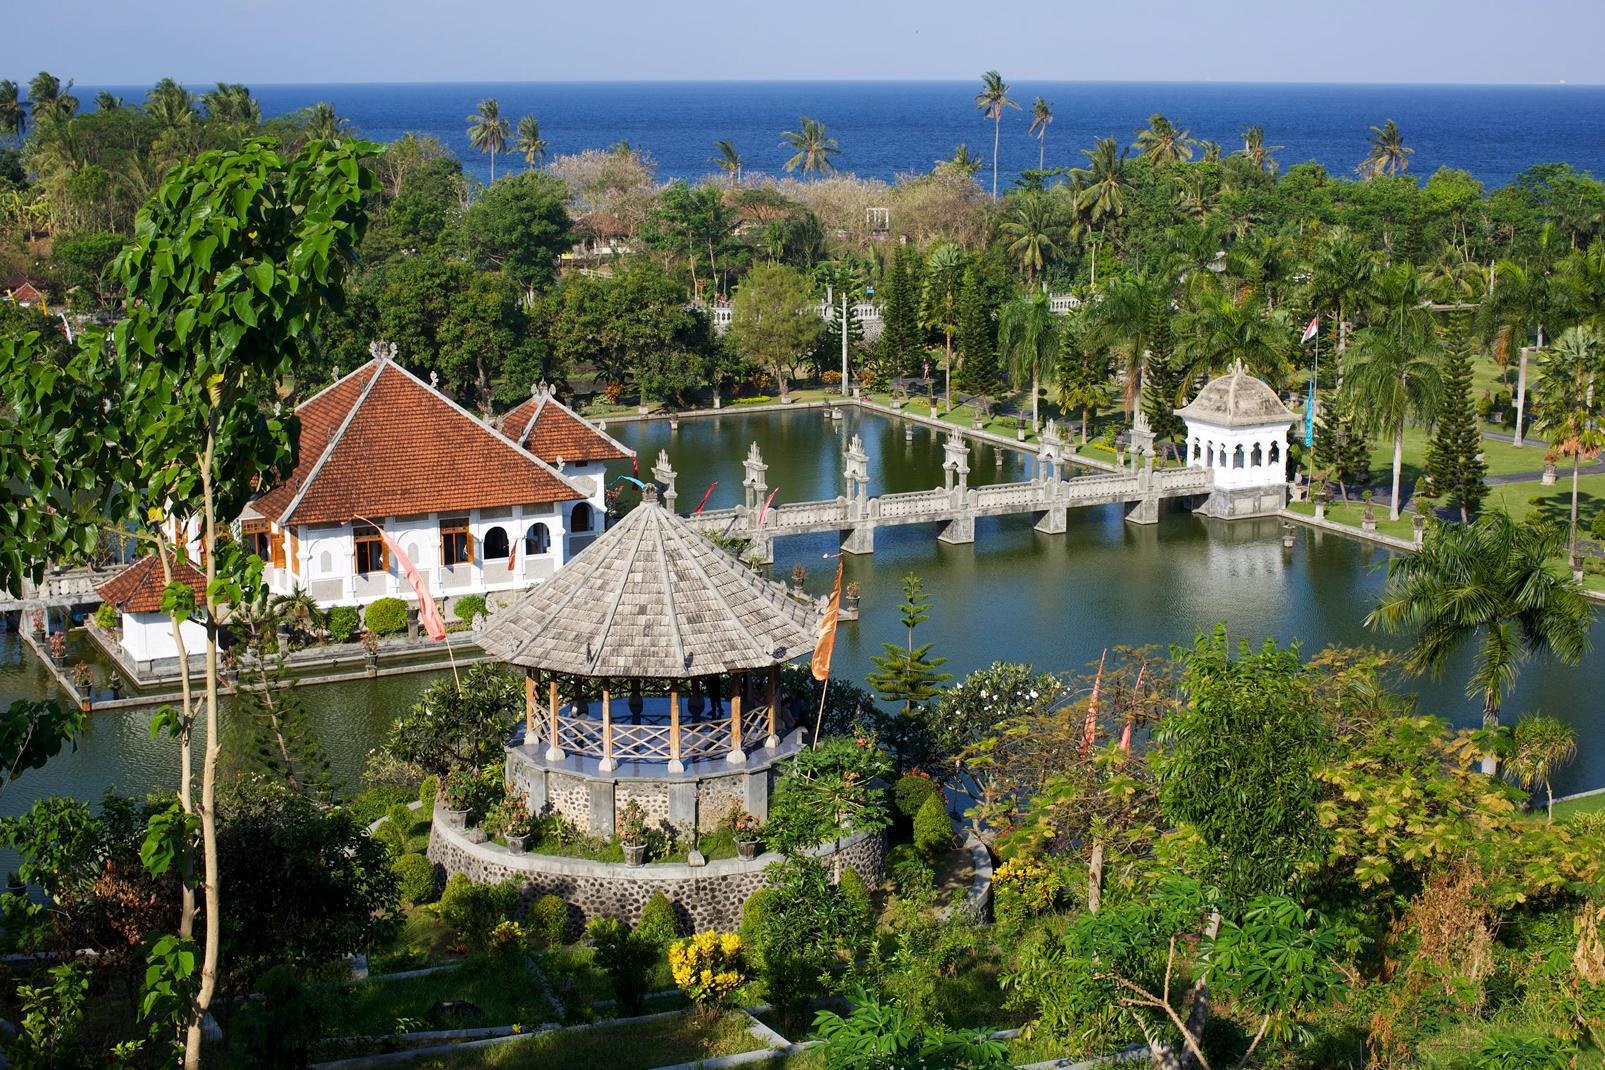 A l'est de Bali, Candi Dasa cultive son calme loin de l'agitation des plages de Kuta ou de l'affluence d'Ubud. Contrairement à ces deux spots incontournables du tourisme sur l'île des Dieux, Candi Dasa n'en a pas la personnalité ni les charmes. A moins que vous ne veniez en séjour profiter des infrastructures de votre hôtel installé sur le bord de mer ou des quelques plages de sable, vous n'aurez pas ...